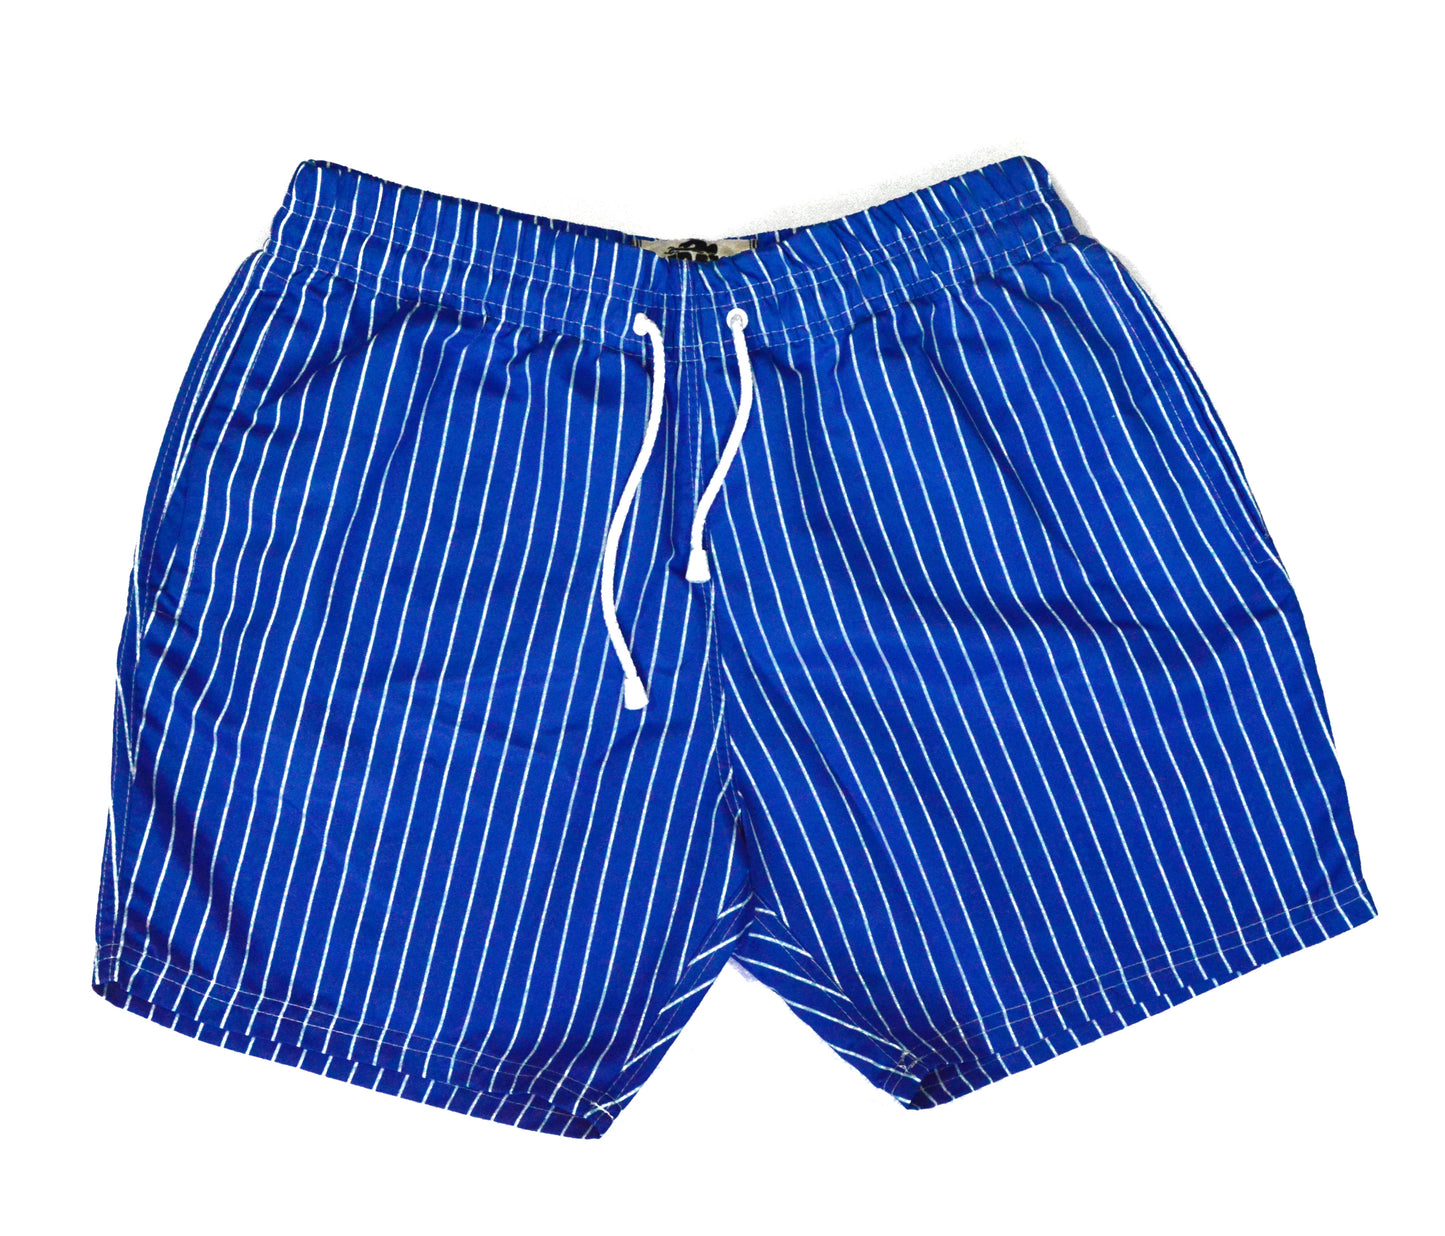 Pantaloneta azul con líneas blancas 0.5